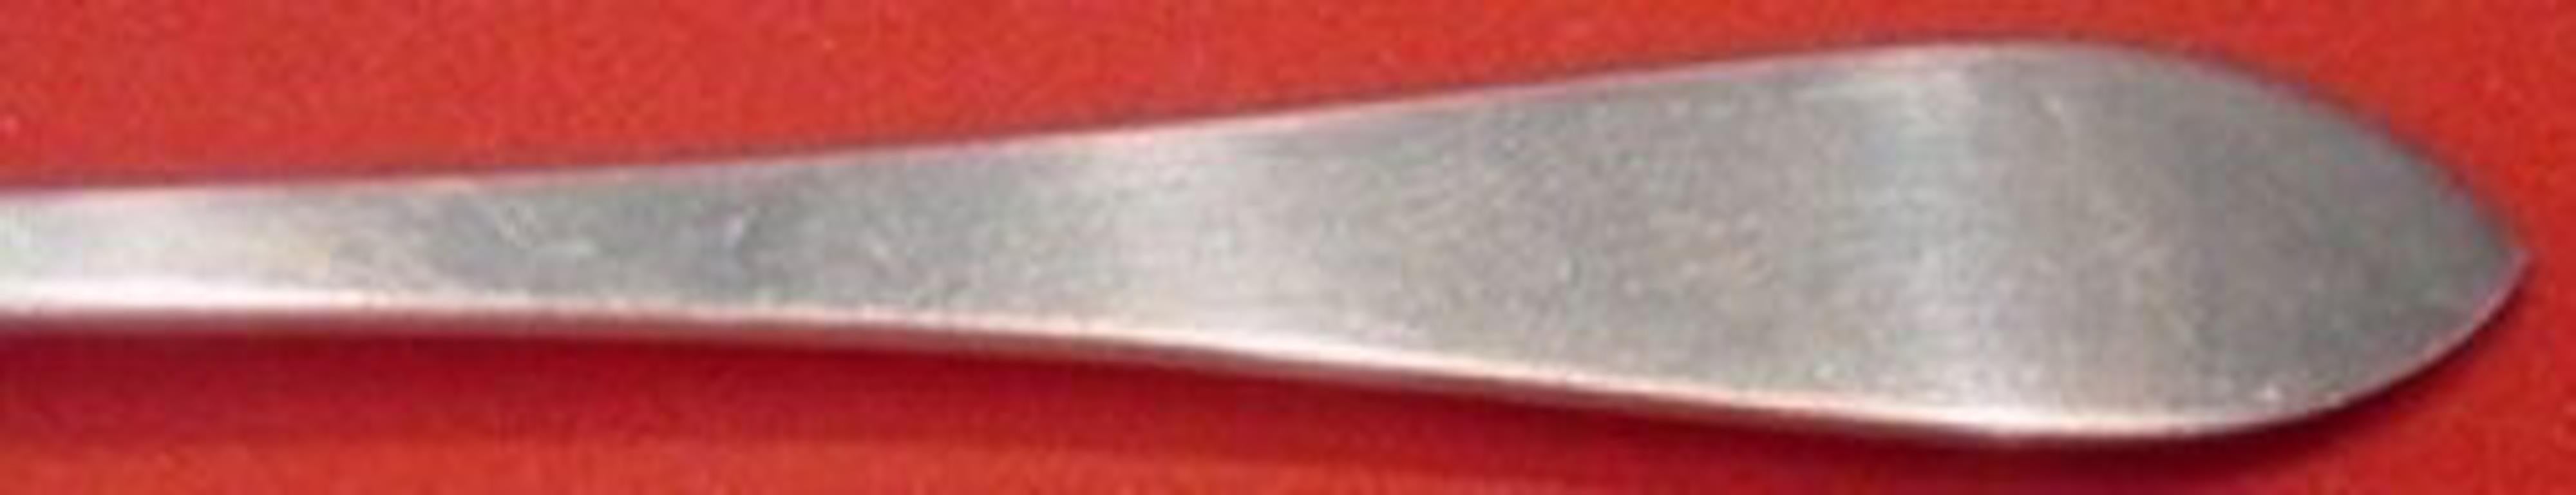 Sterling silver demitasse spoon, 4 1/4